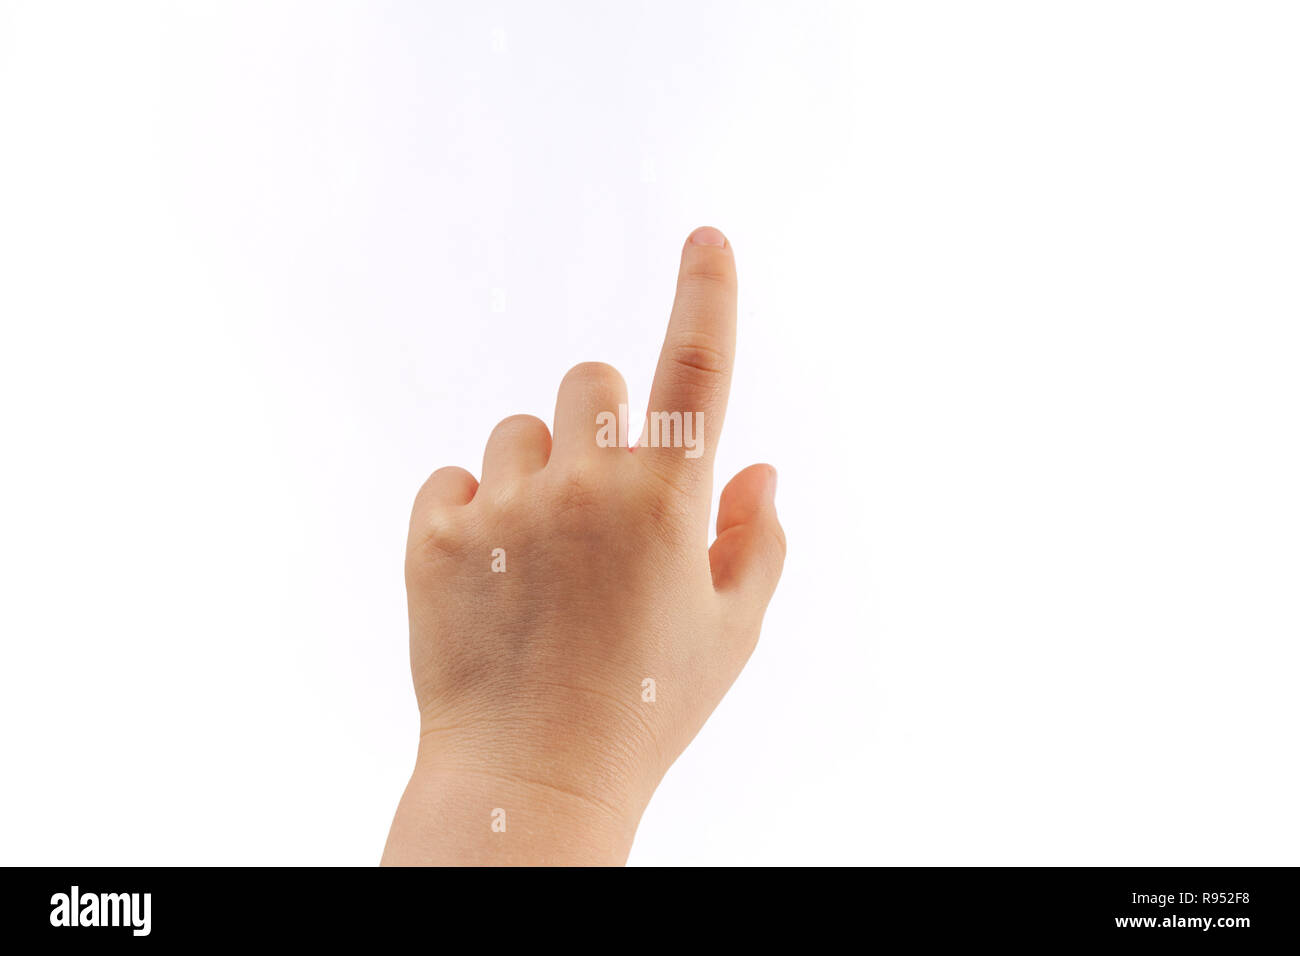 La main gauche de l'enfant touchant avec index isolé sur fond blanc Banque D'Images